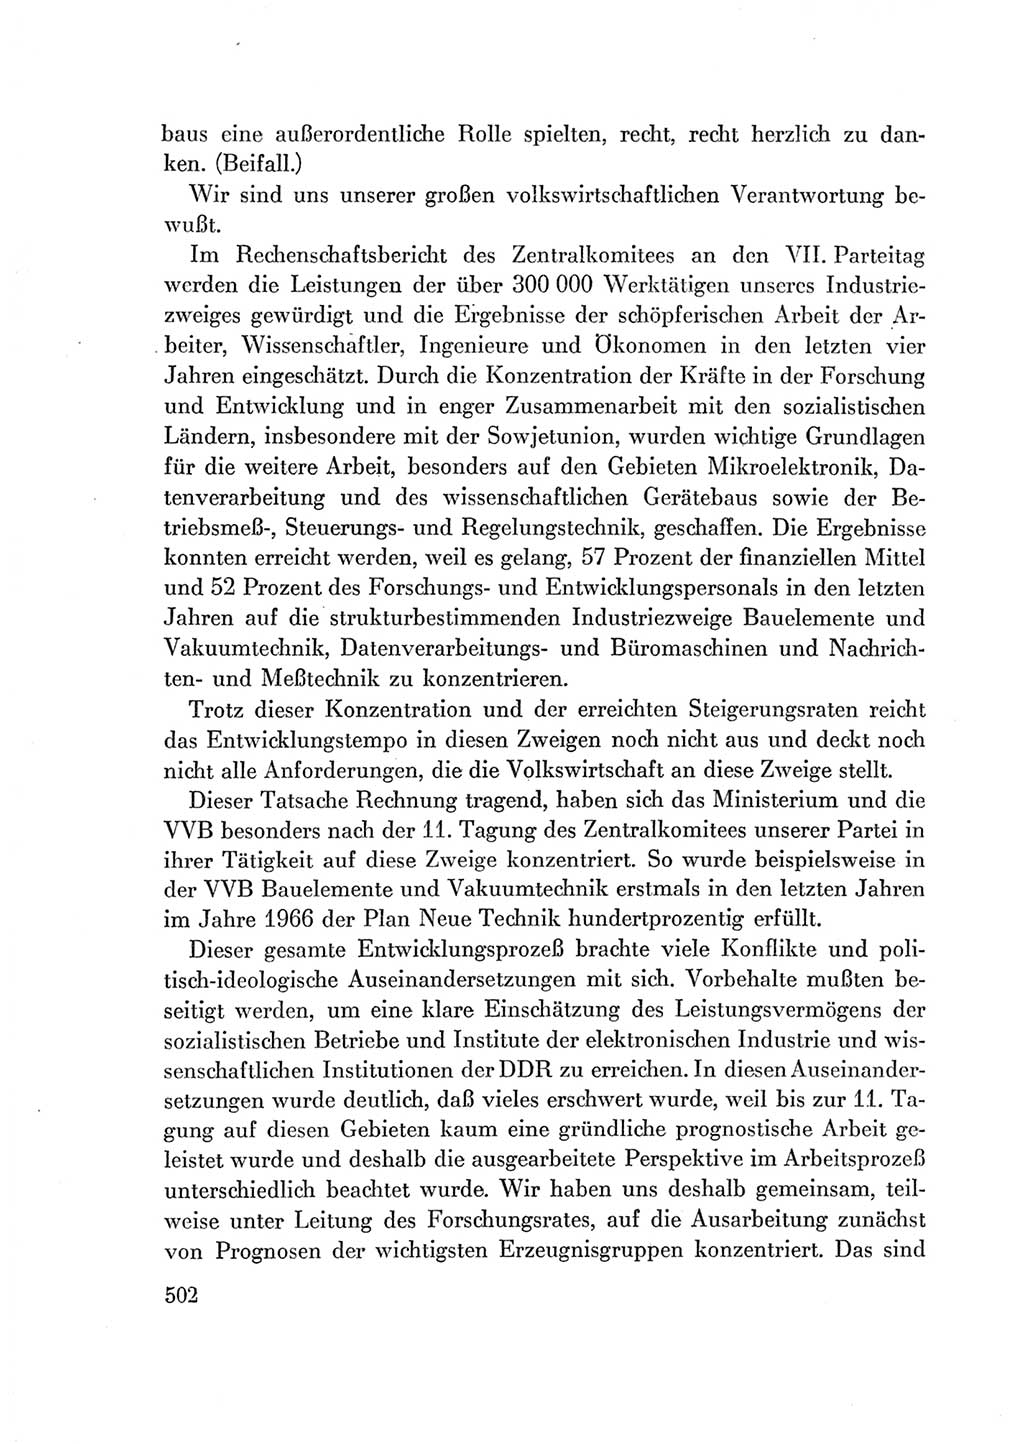 Protokoll der Verhandlungen des Ⅶ. Parteitages der Sozialistischen Einheitspartei Deutschlands (SED) [Deutsche Demokratische Republik (DDR)] 1967, Band Ⅰ, Seite 502 (Prot. Verh. Ⅶ. PT SED DDR 1967, Bd. Ⅰ, S. 502)